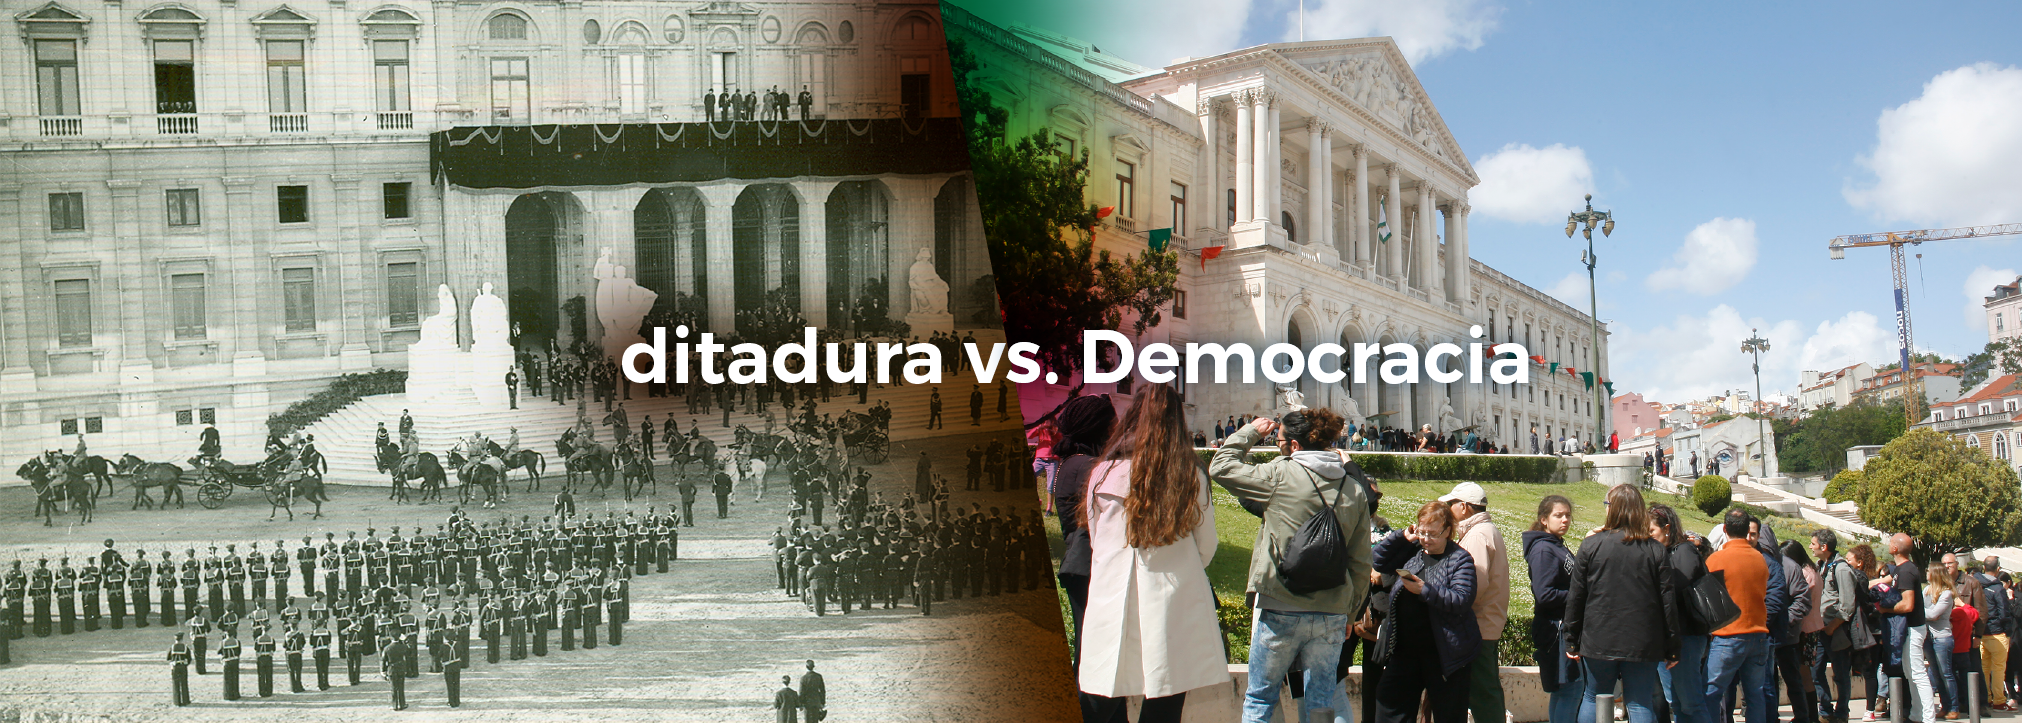 Ditadura vs democracia